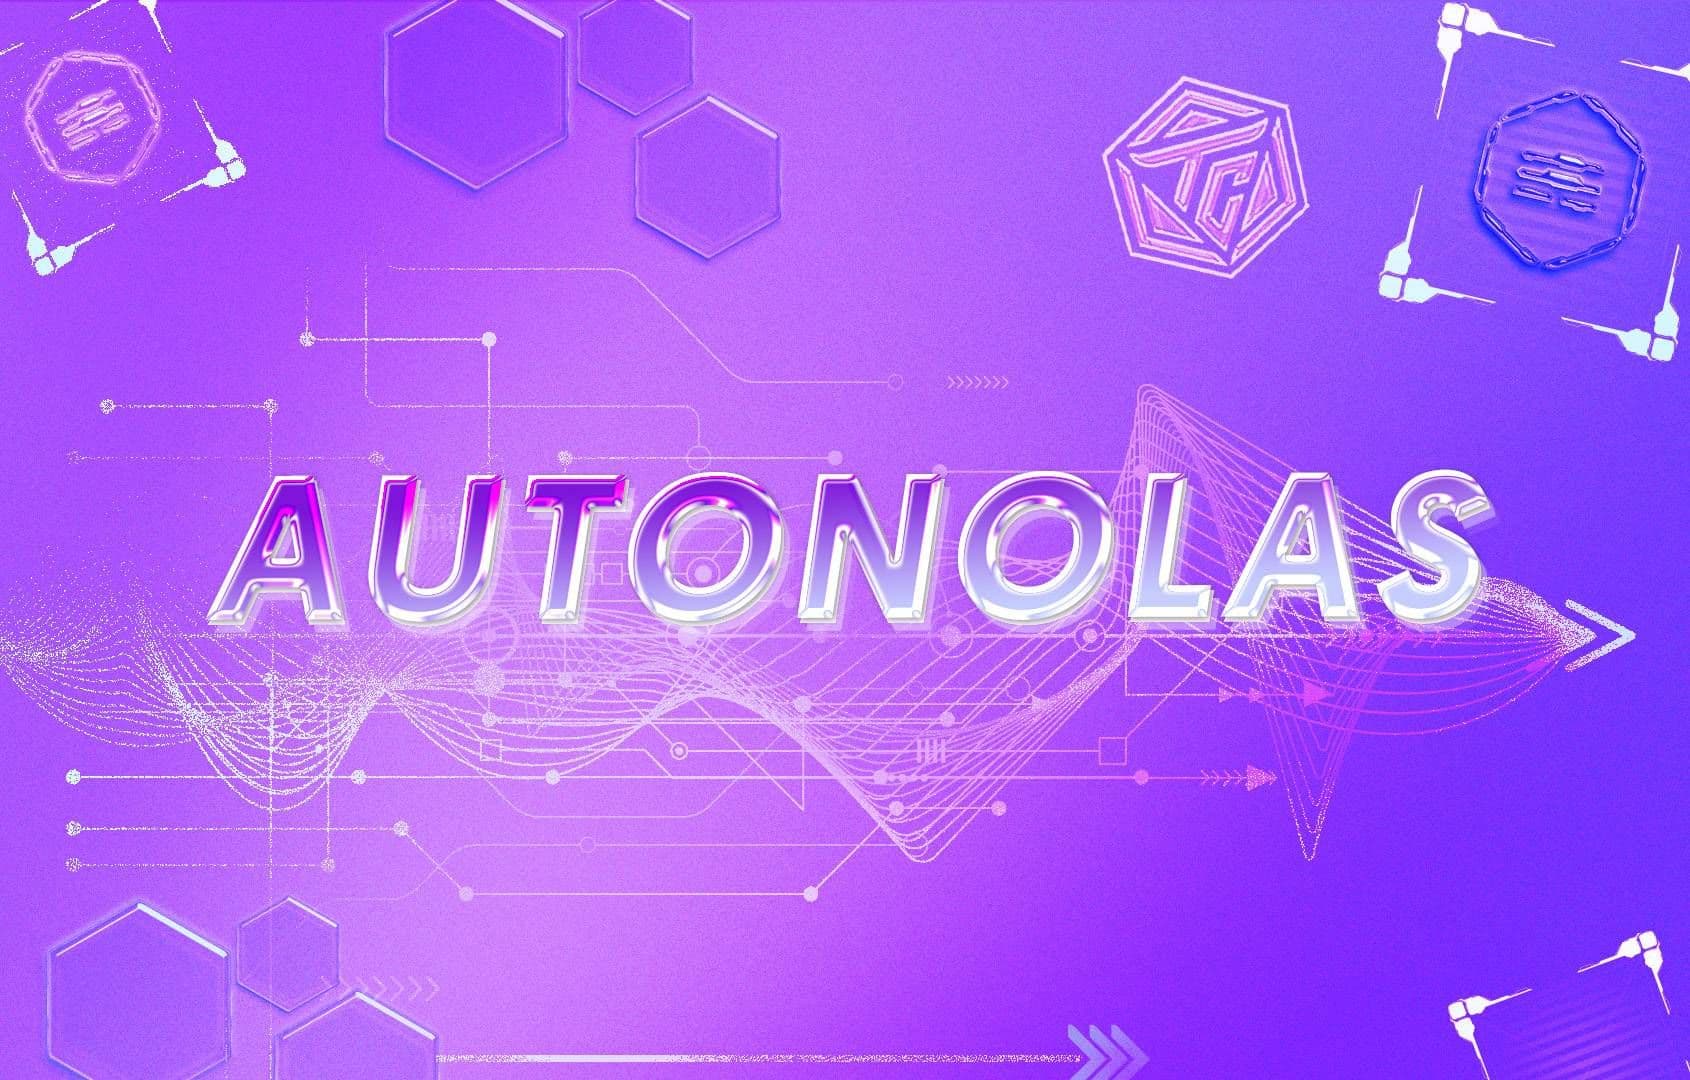  Autonolas (OLAS) là gì? Dự án AI đạt vốn hóa $200M chỉ sau 5 tháng ra mắt